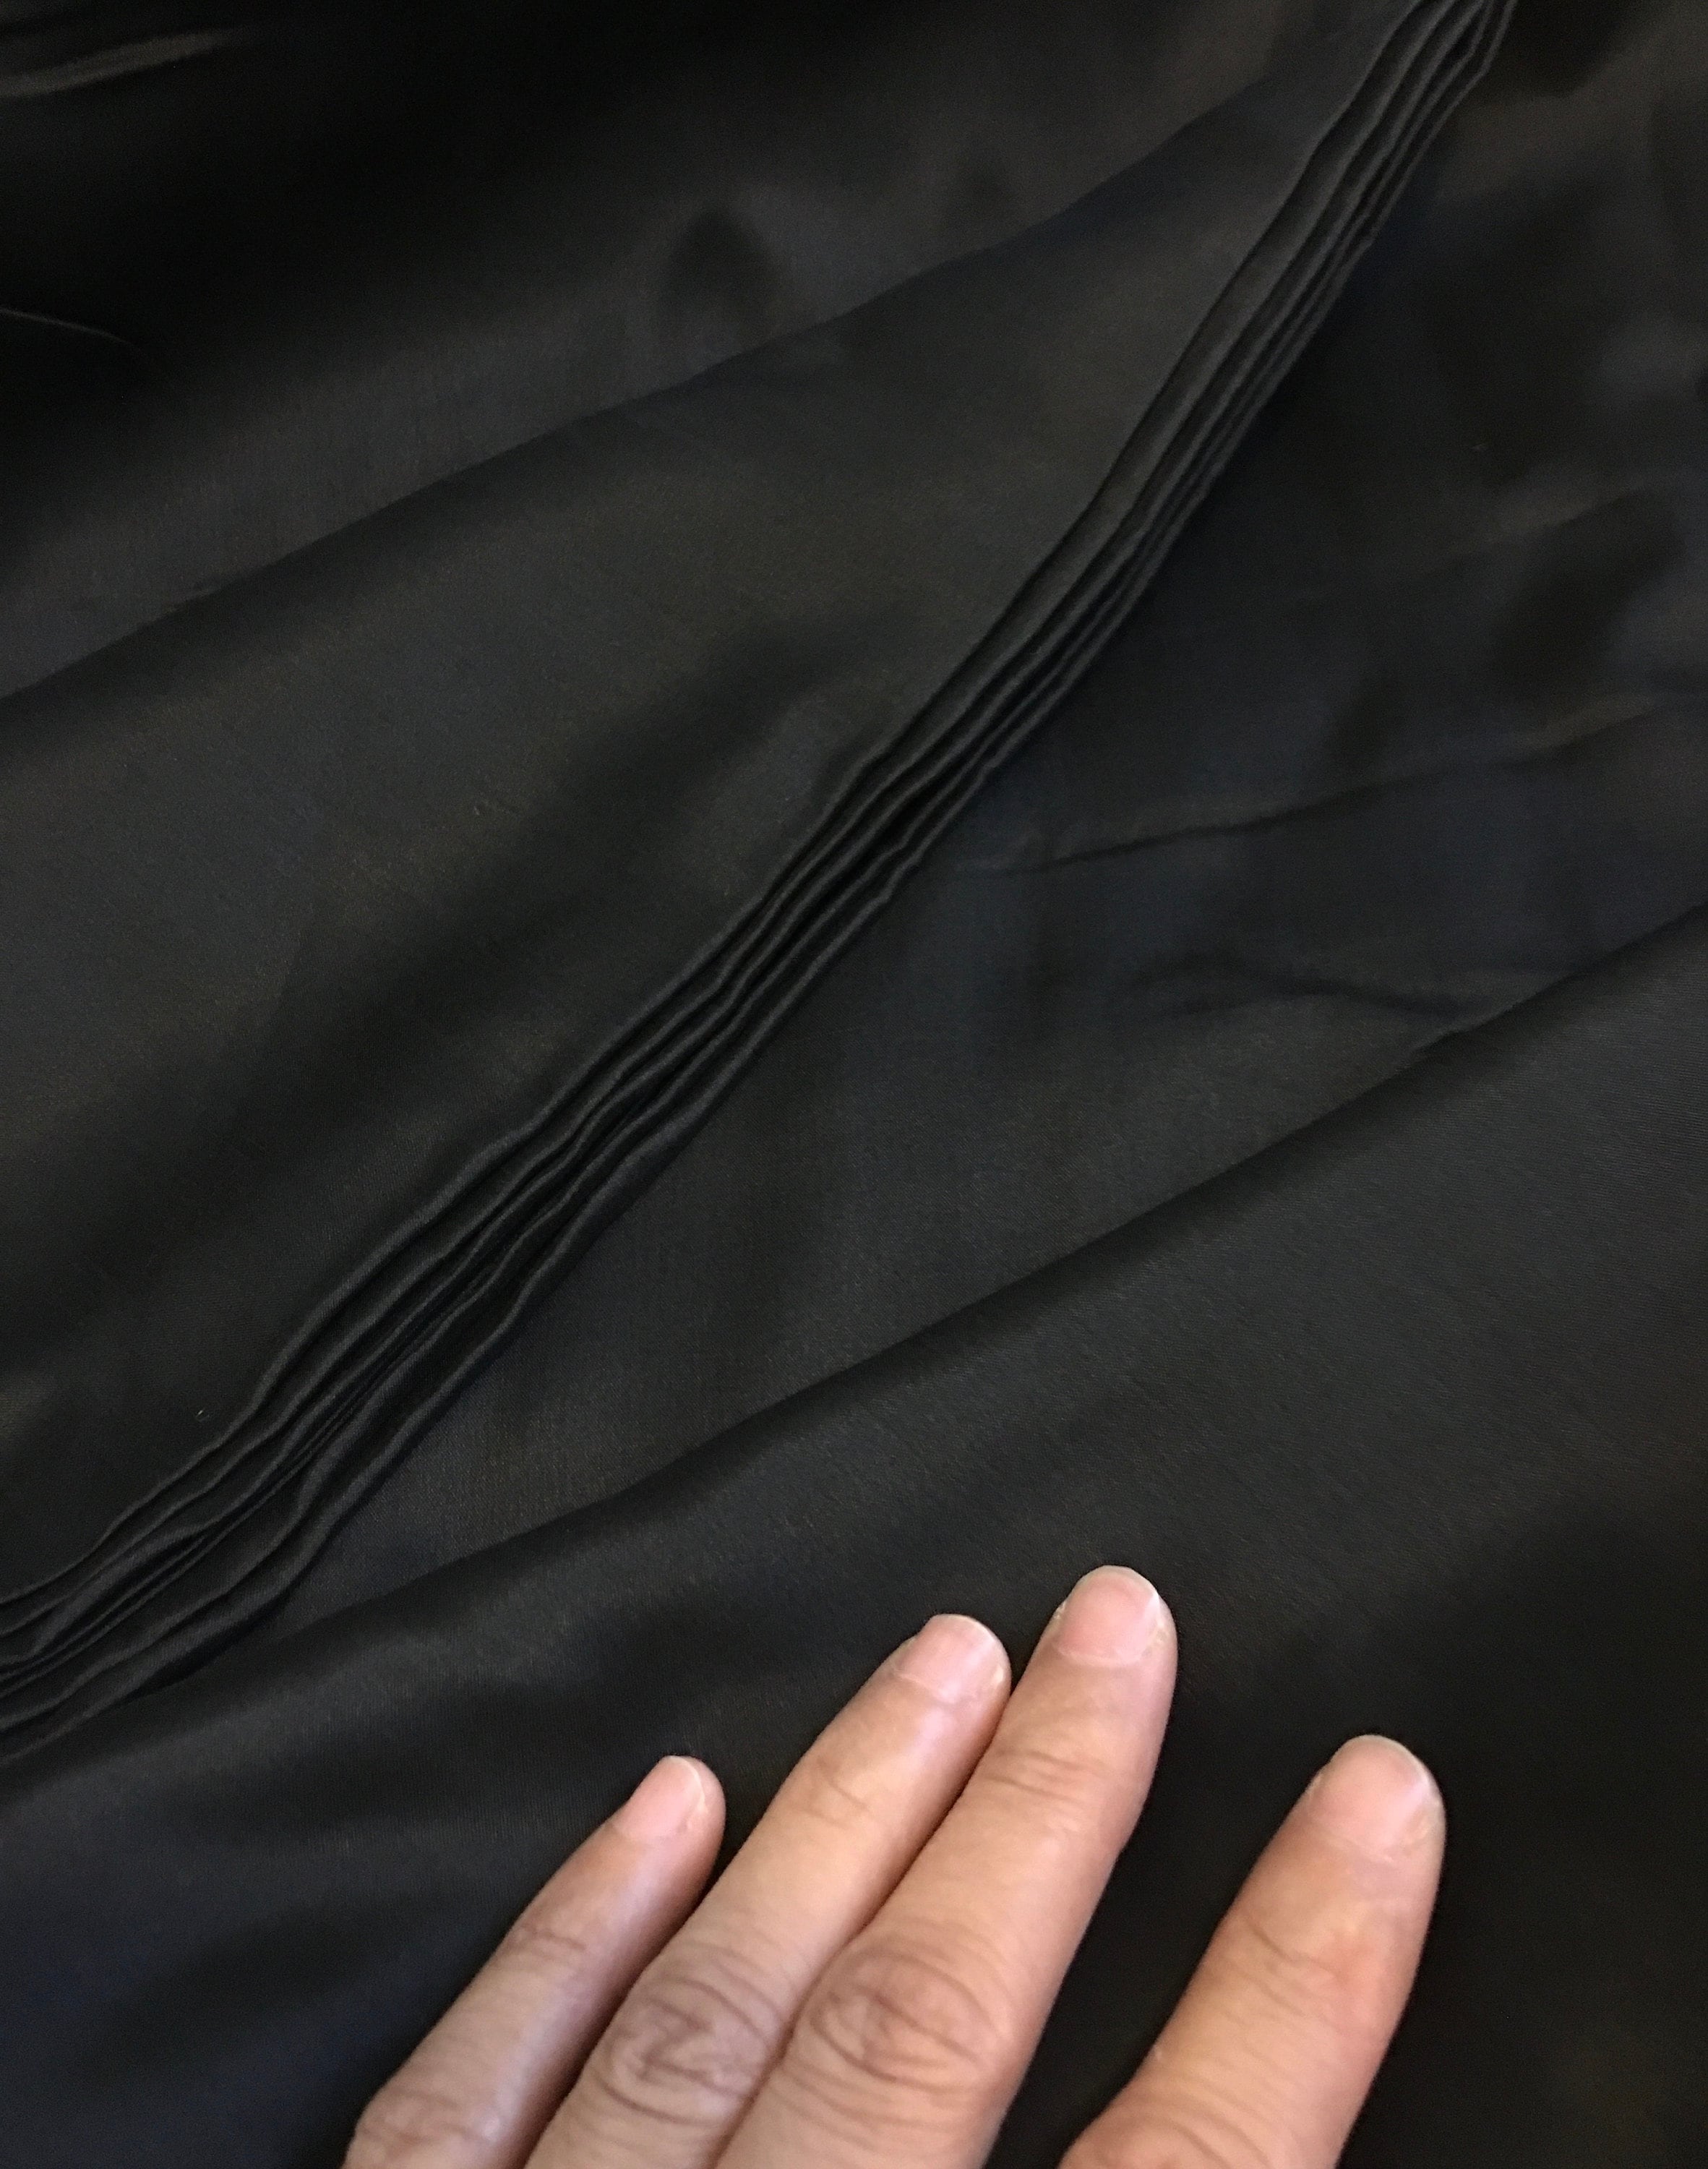 Black Dull Satin Fabric by the Yard /duchess Satin/ Peau De Soie